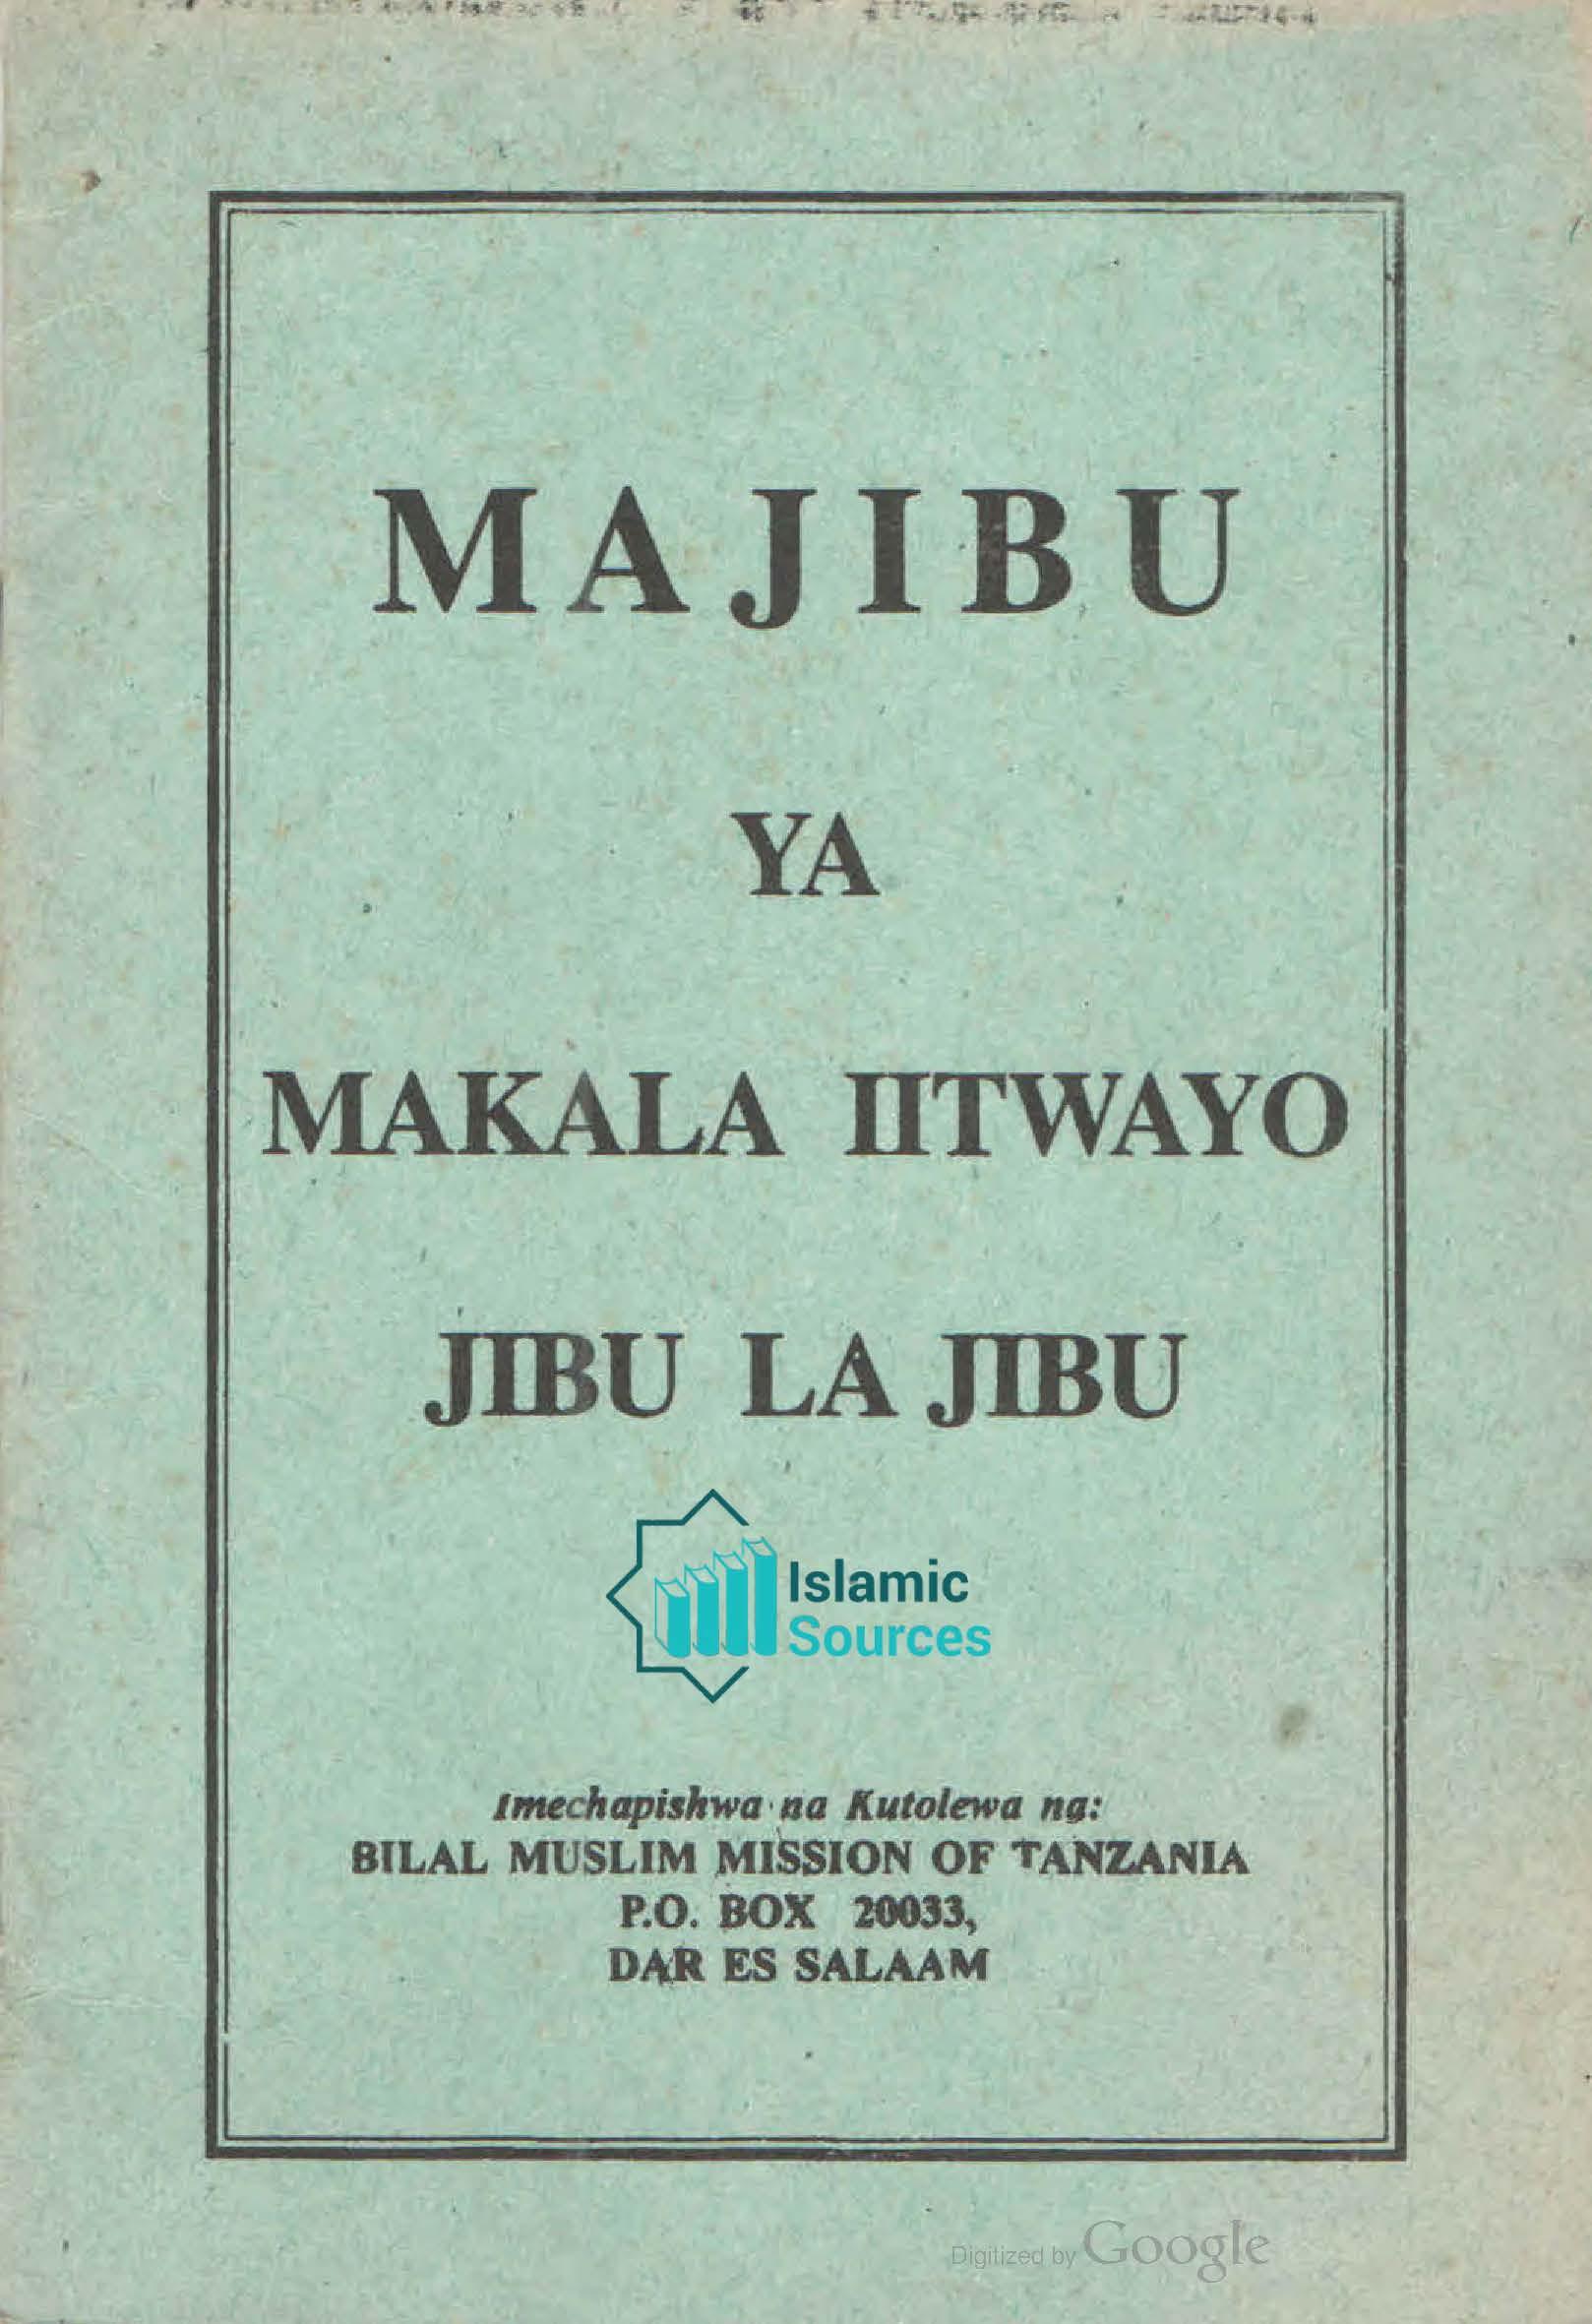 Majibu_ya_Makala_Iitwayo_Jibu_la_Jibu